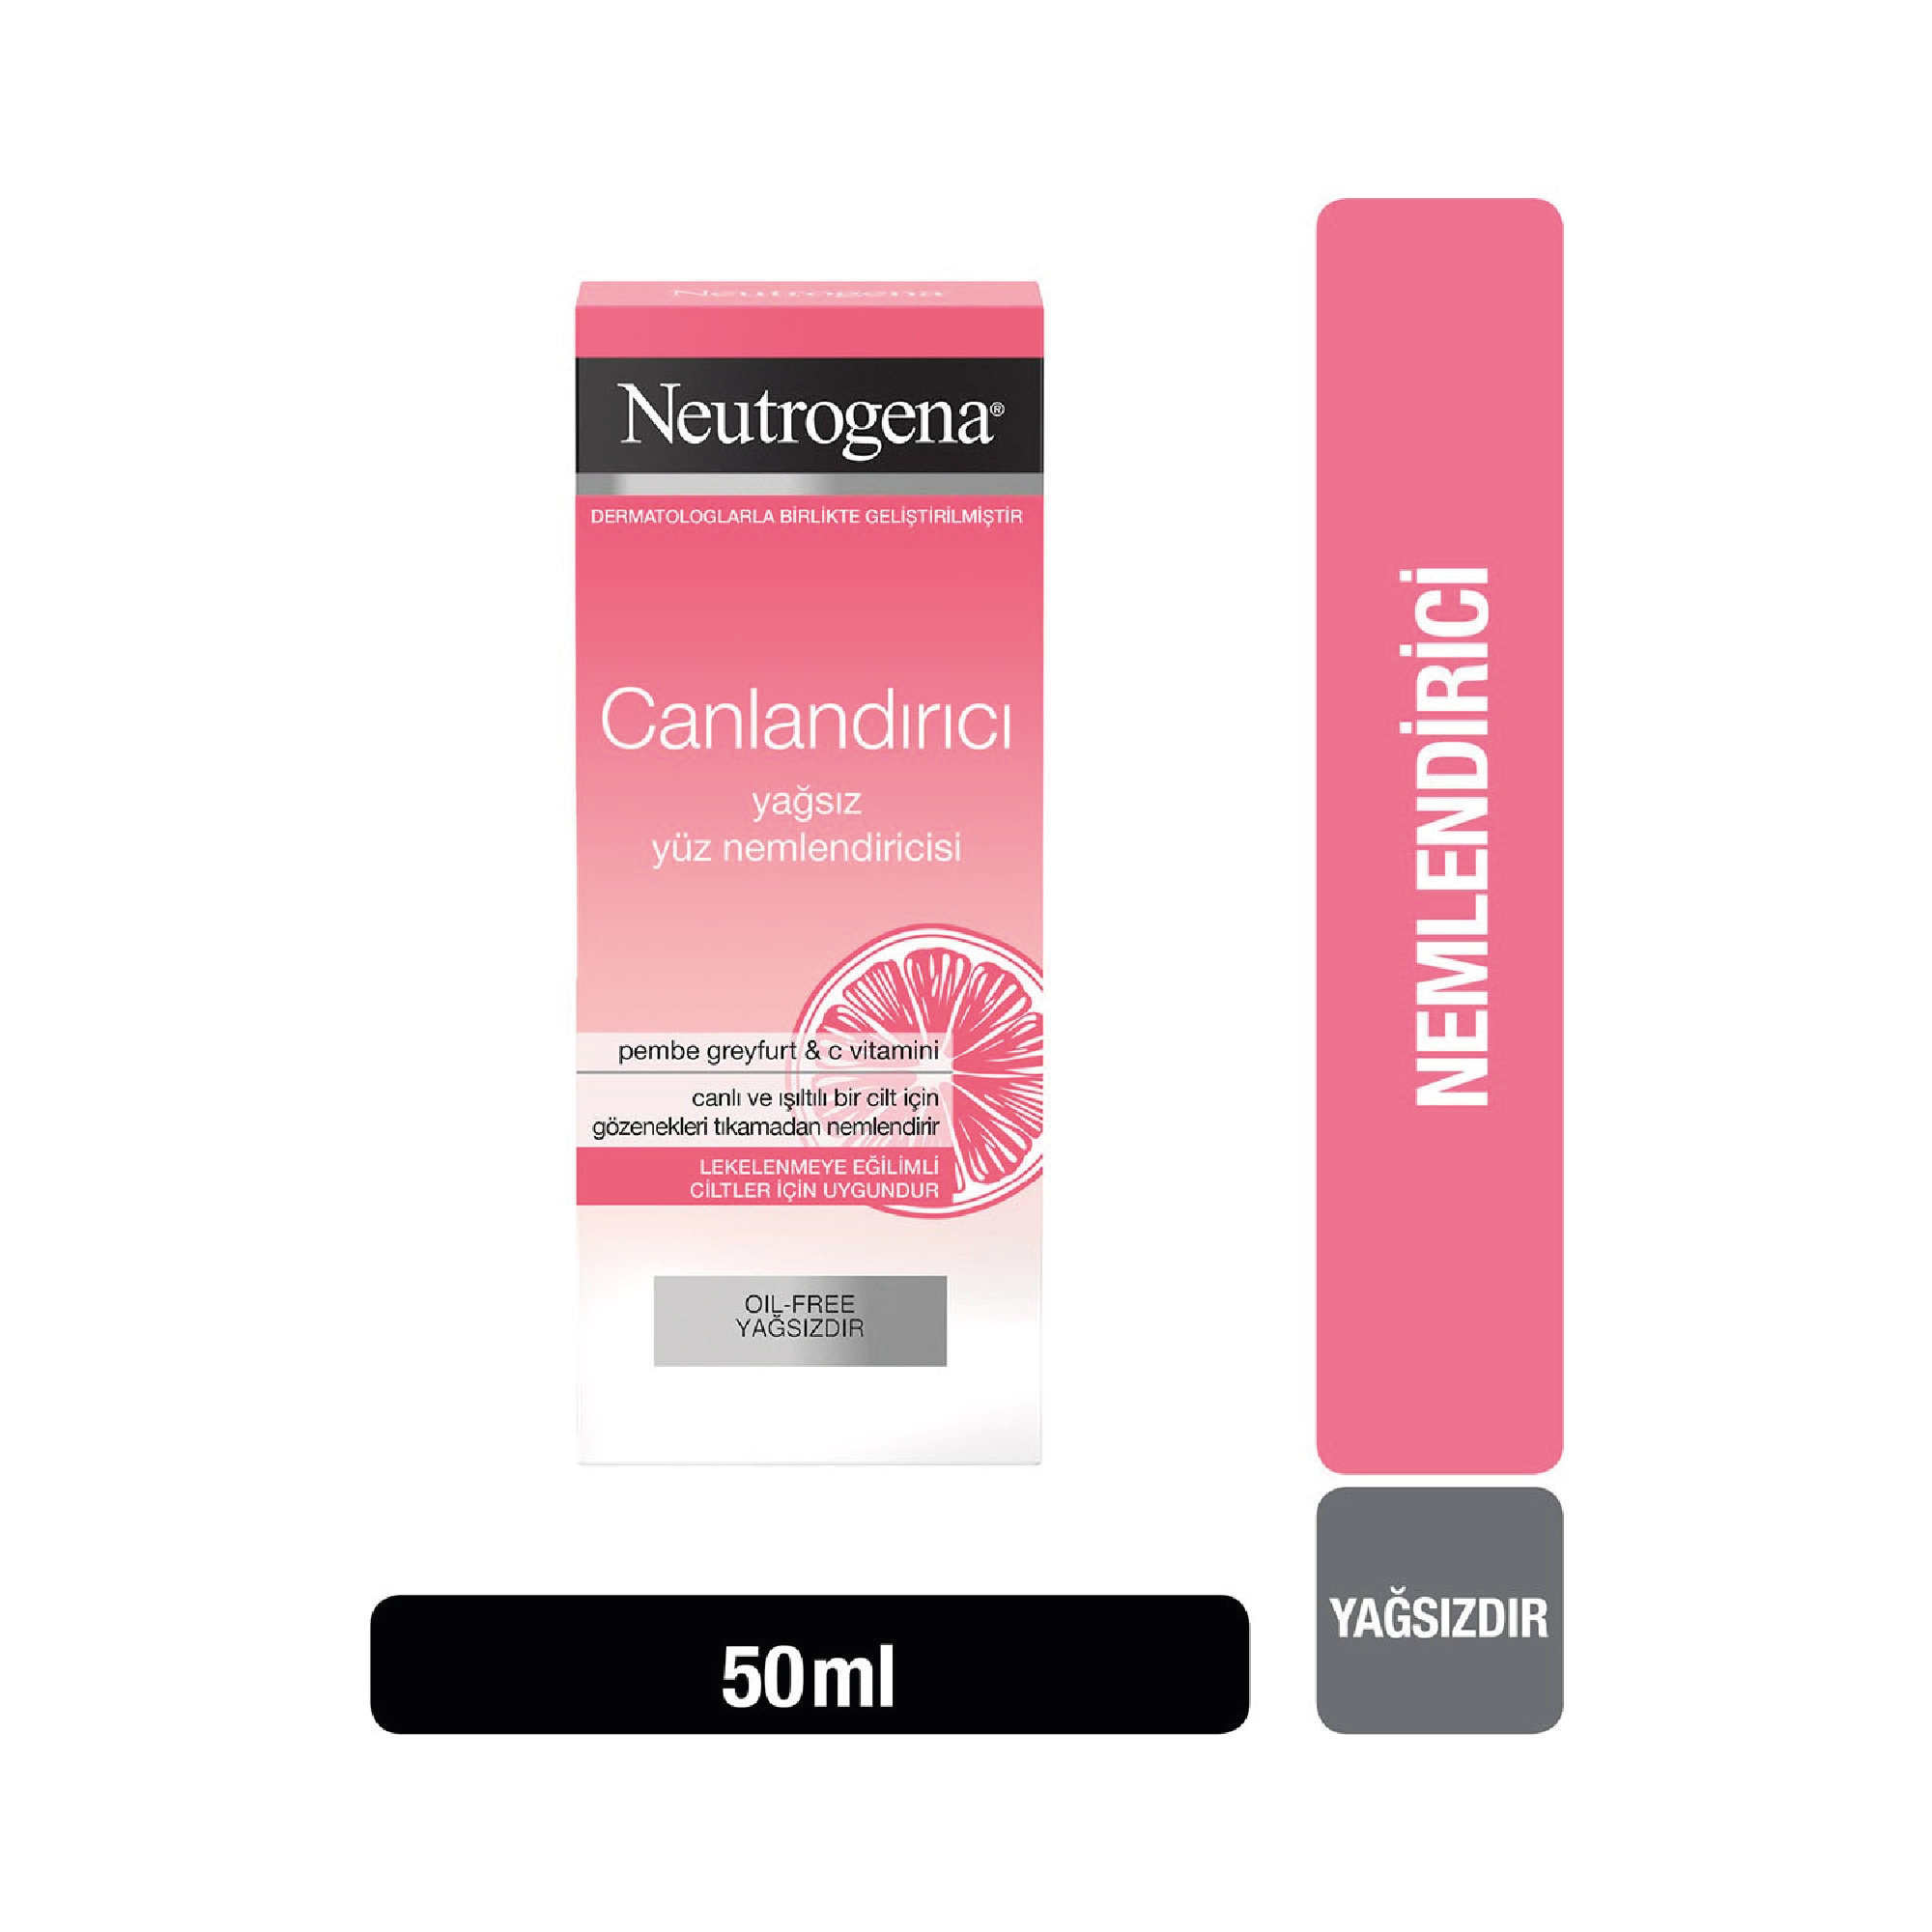 Neutrogena Canlandırıcı Yağsız Yüz Nemlendirici 50 ml